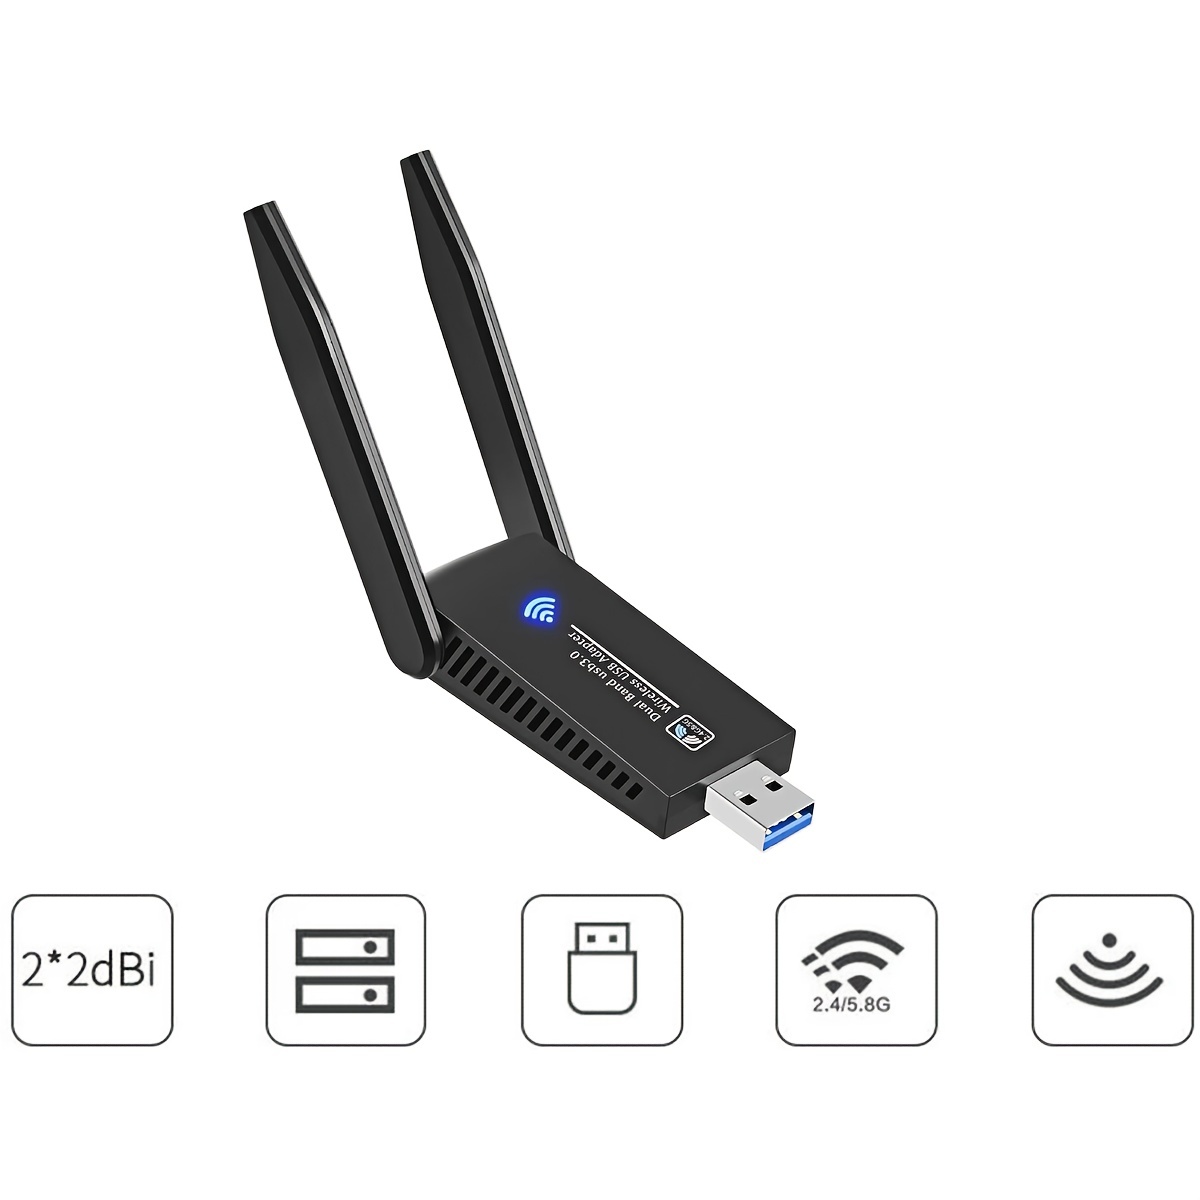  Adaptador inalámbrico USB WiFi para PC – Techkey 1200Mbps doble  banda 2.4GHz/300Mbps 5GHz/867Mbps alta ganancia Dual 5dBi antenas red WiFi  USB 3.0 para computadora portátil de escritorio con Windows 10/8/7/XP Mac